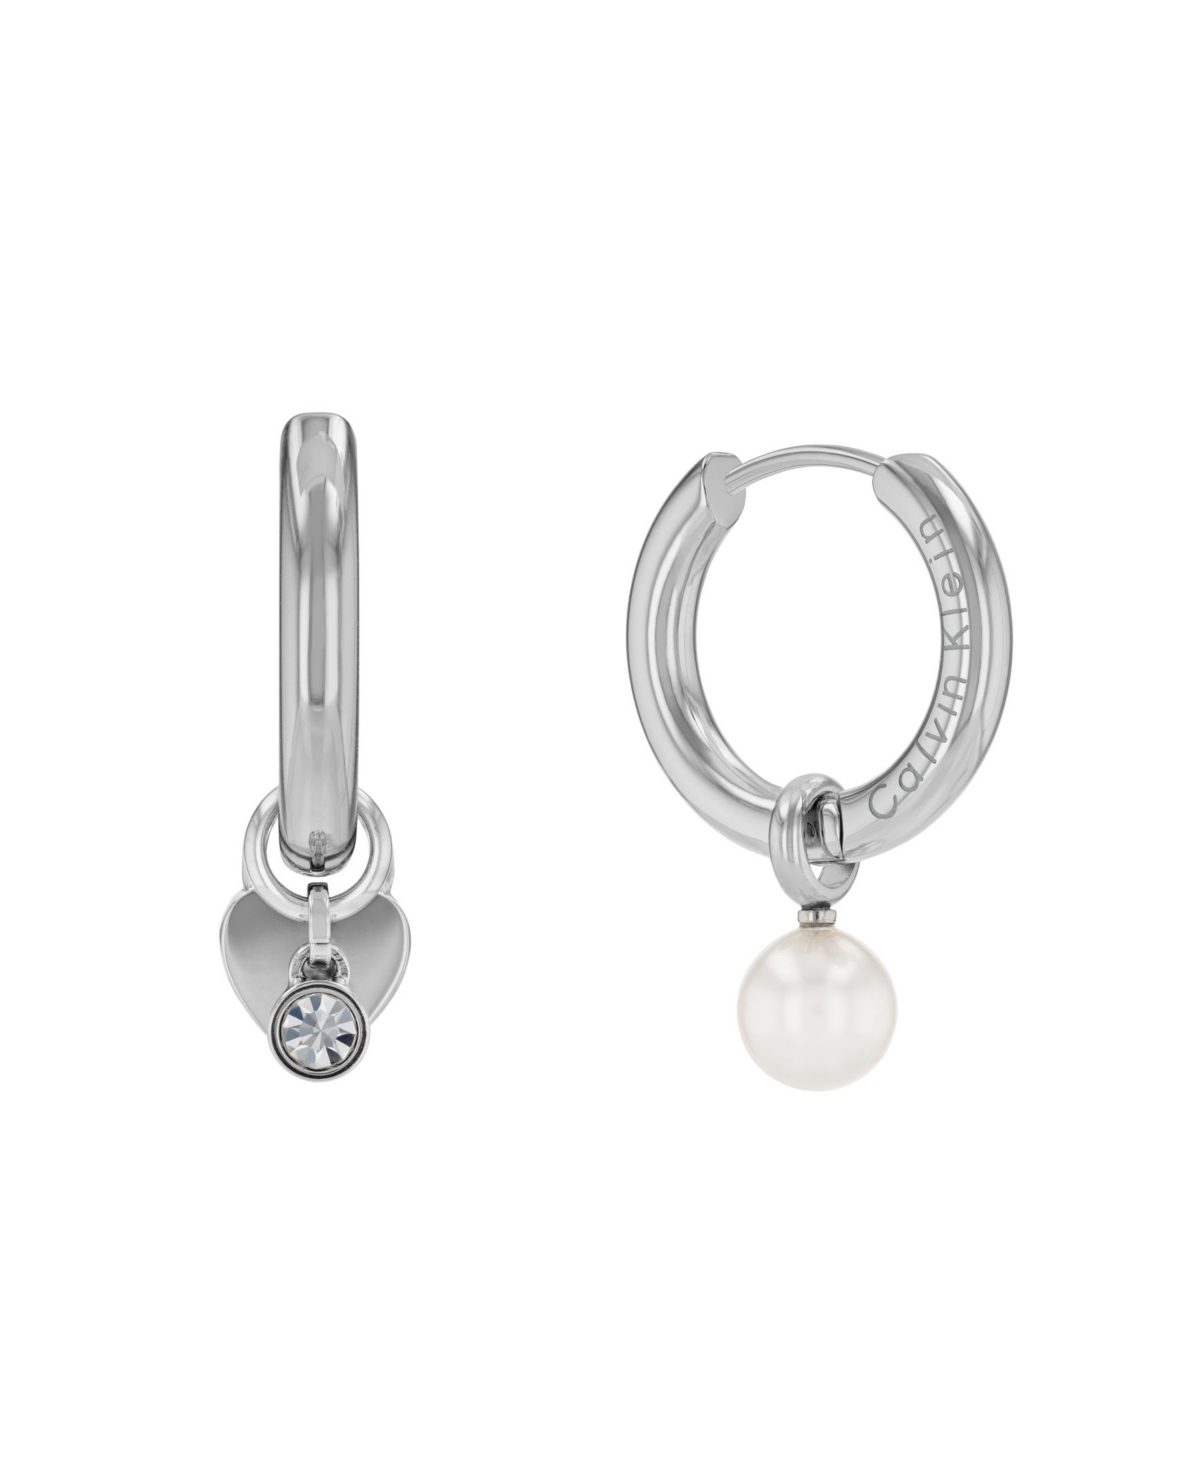 Women's Stainless Steel Huggie Earrings Gift Set - Silver-tone